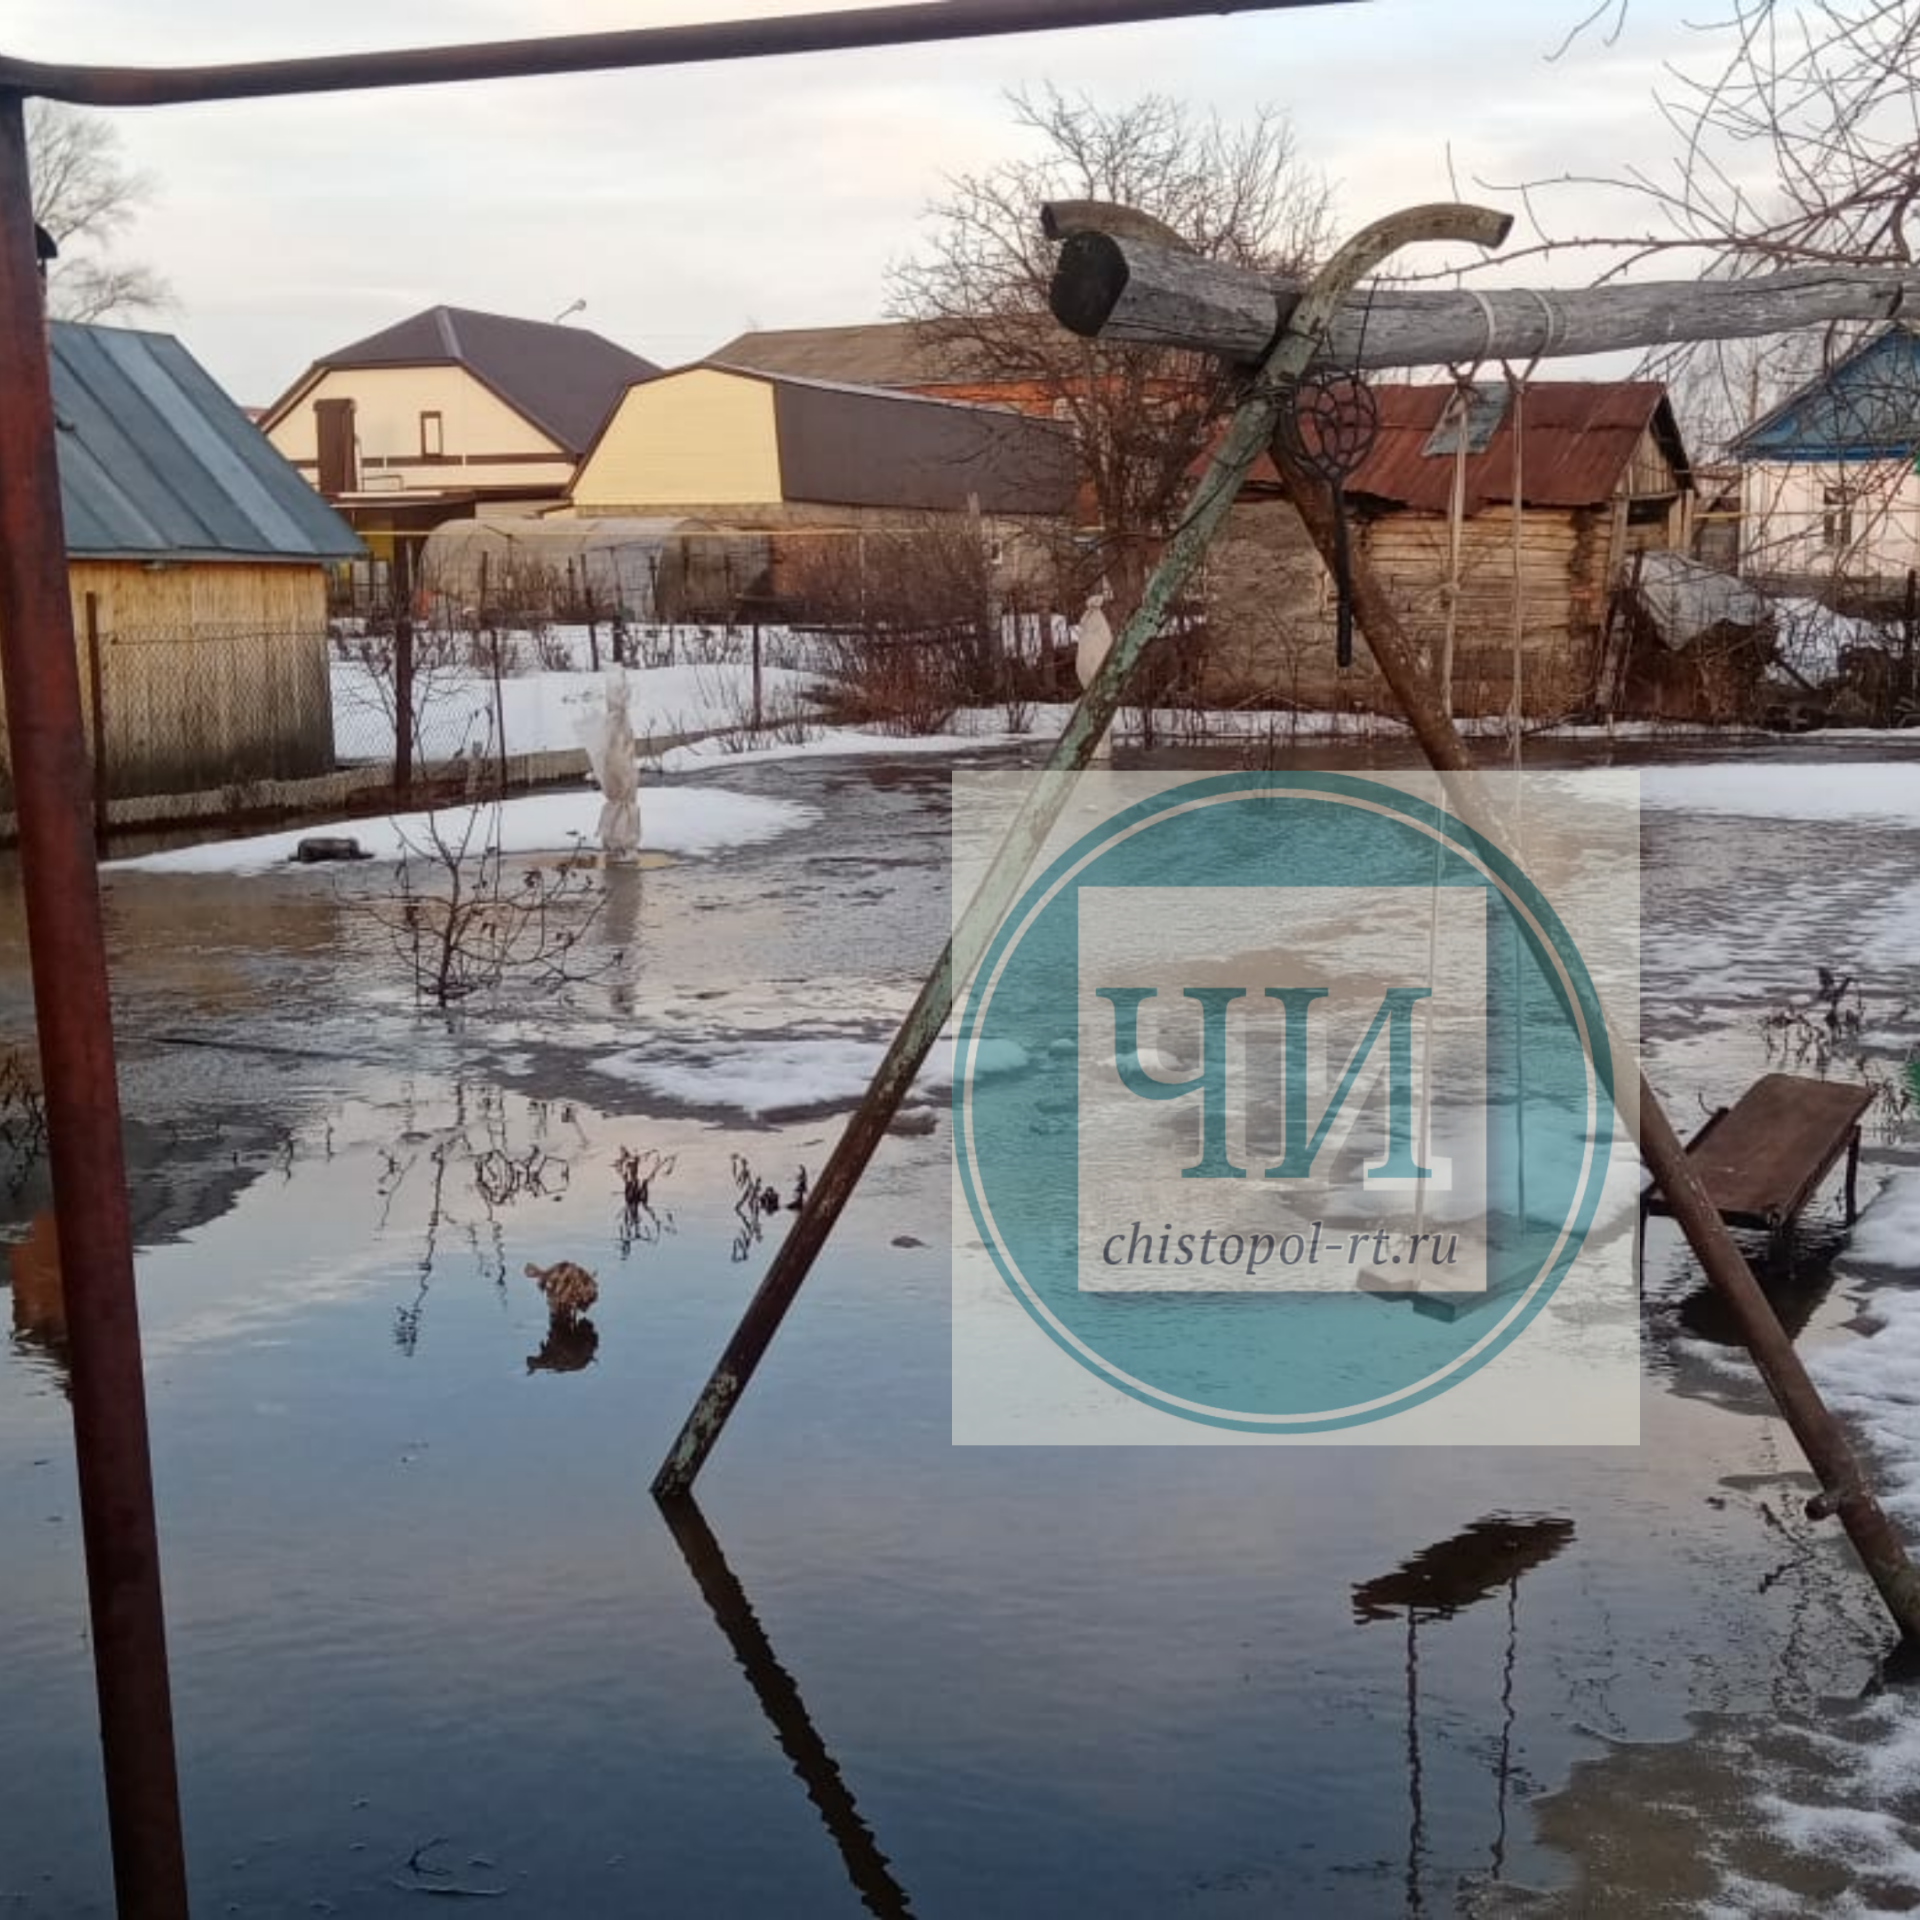 Дома чистопольцев по улице Хамзина утопают в воде